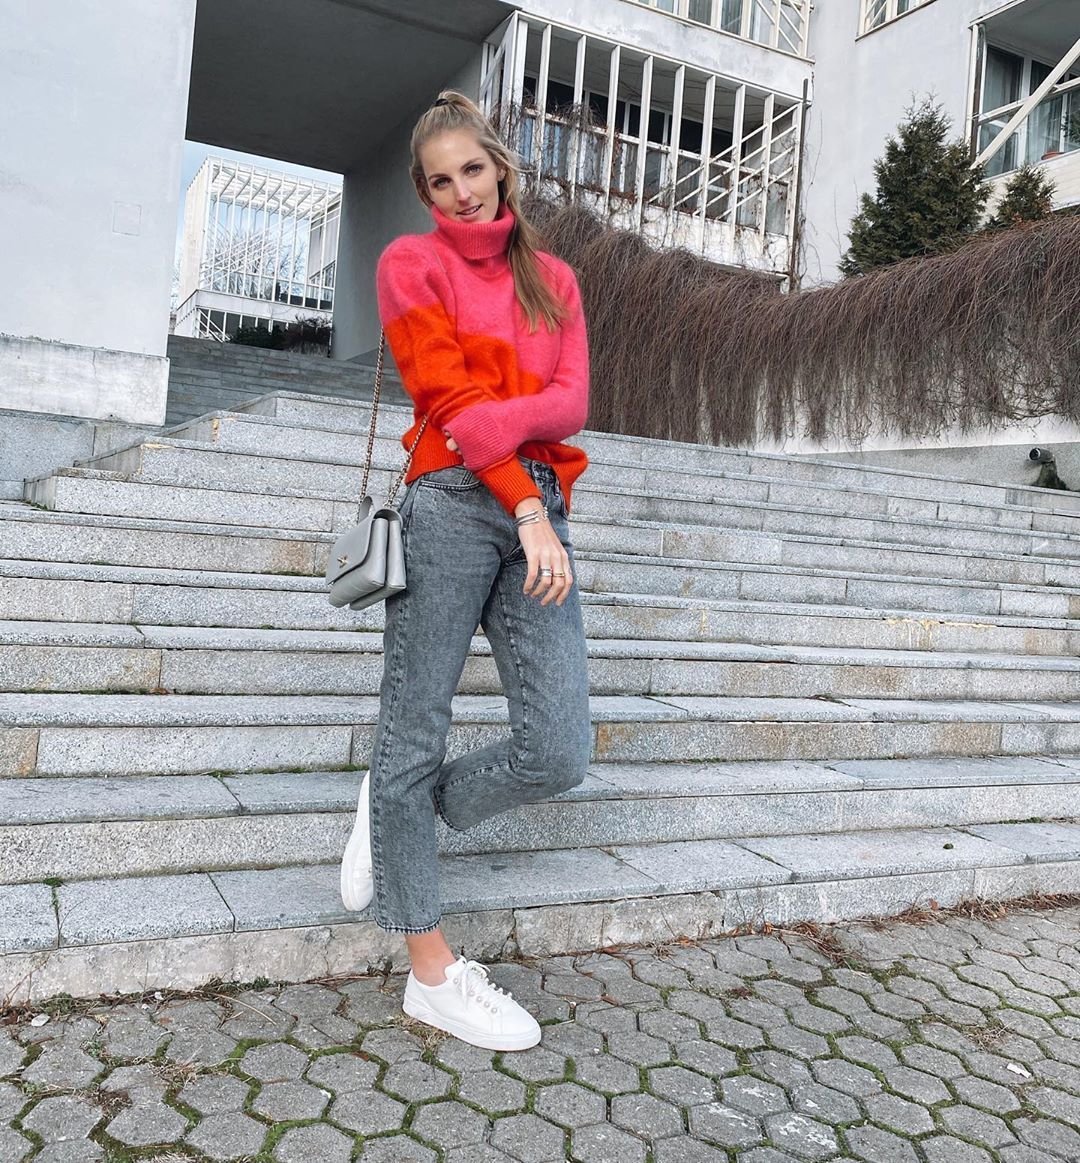 Kristýna Plíšková patří mezi nejkrásnější tenistky okruhu WTA